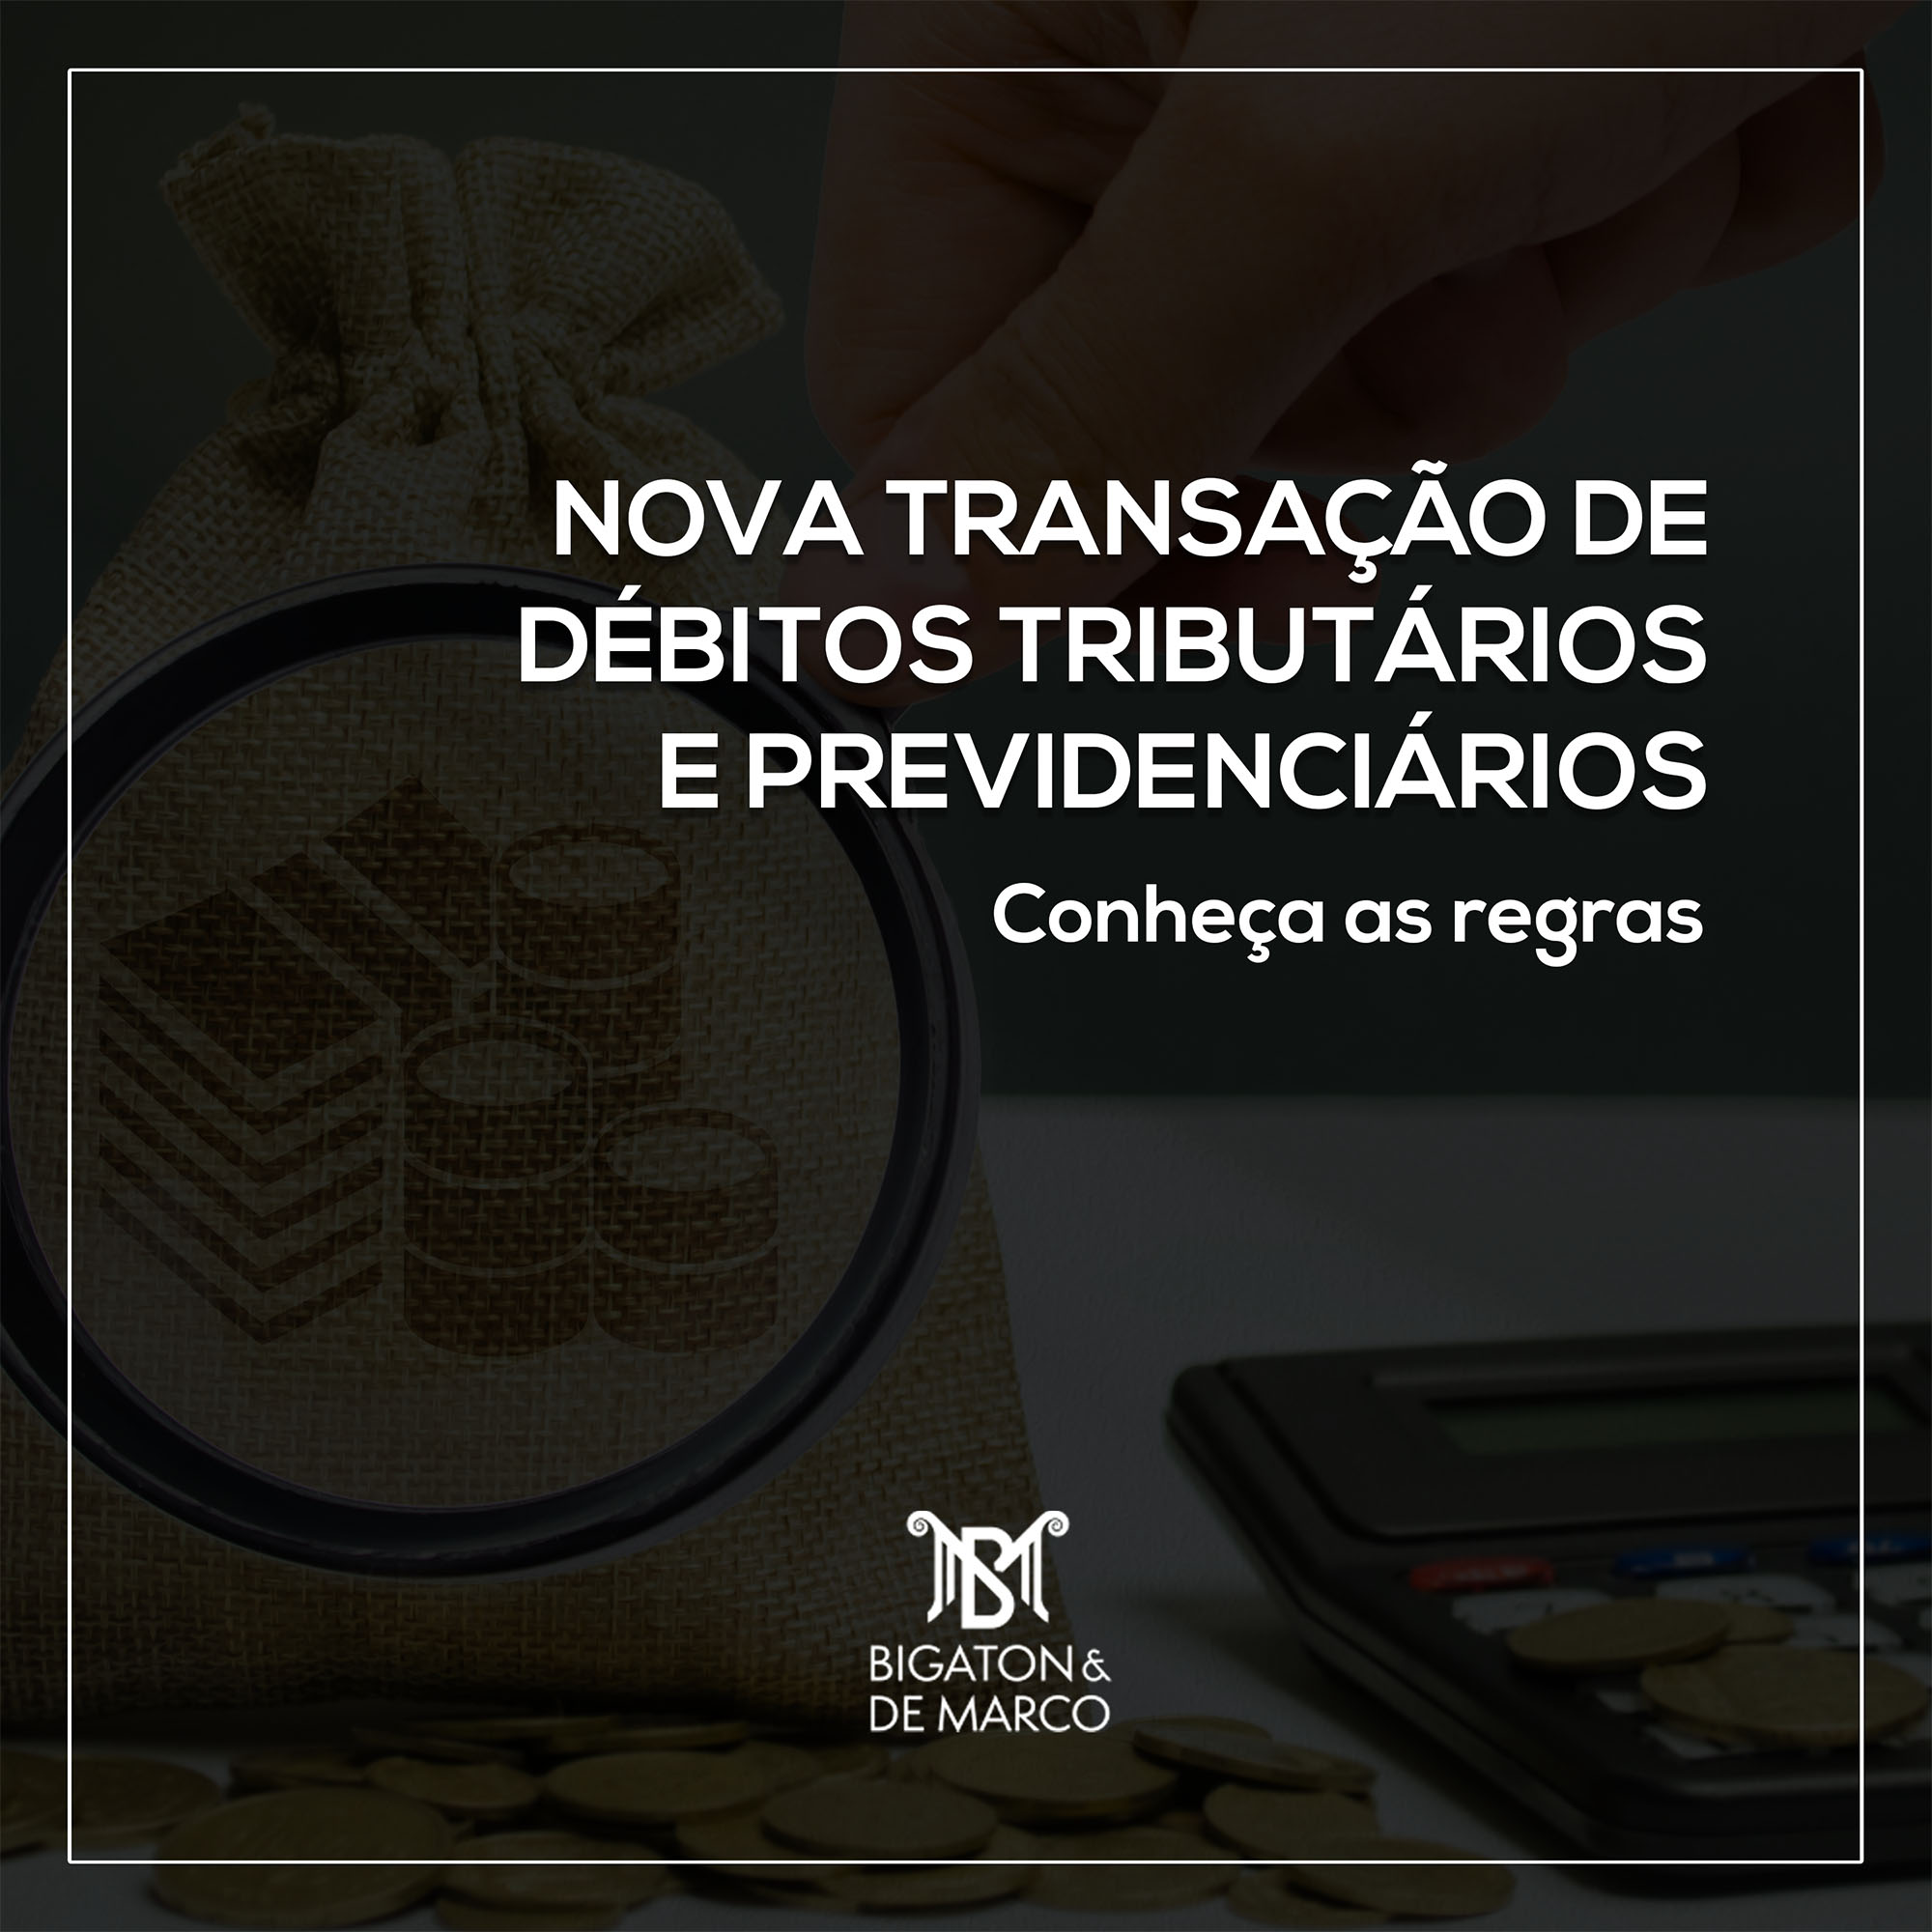 You are currently viewing NOVA TRANSAÇÃO DE DÉBITOS TRIBUTÁRIOS E PREVIDENCIÁRIOS INSCRITOS EM DÍVIDA ATIVA DA UNIÃO